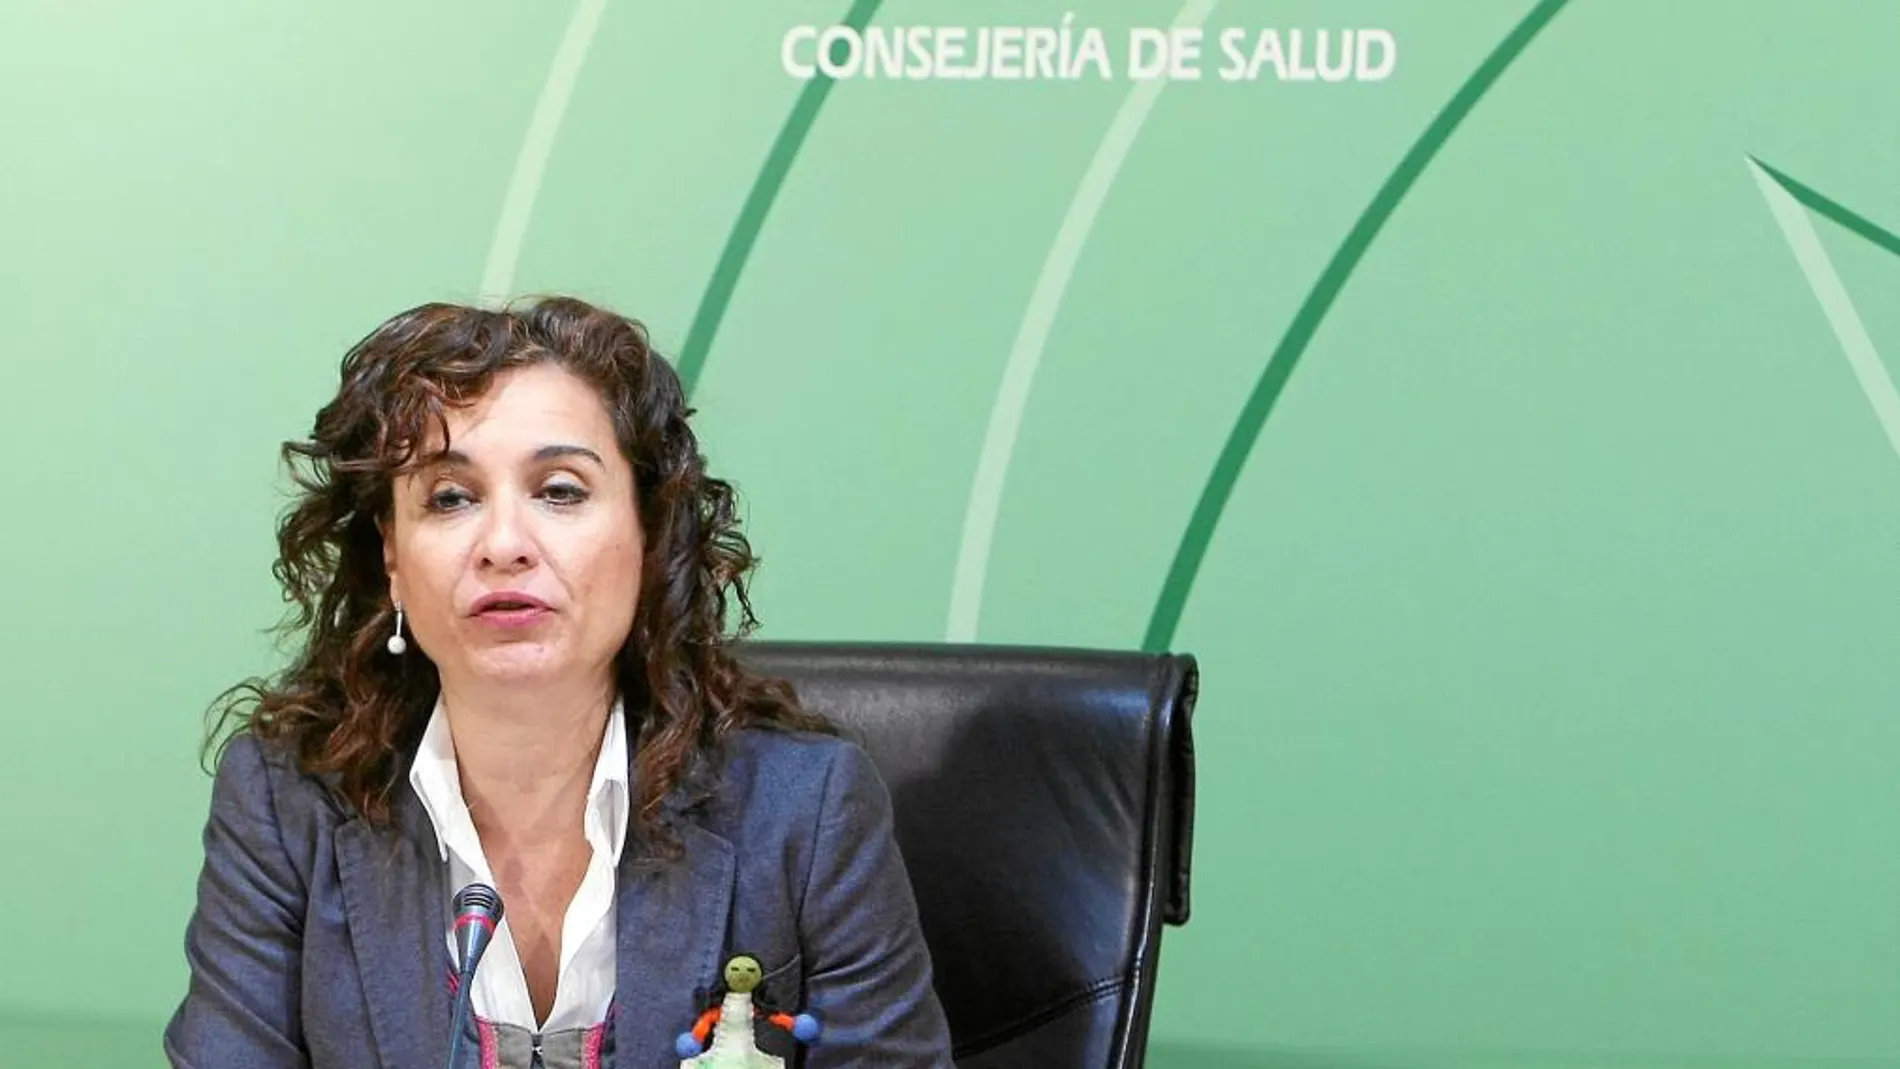 El Sindicato de Enfermería pide a la consejera de Salud, María Jesús Montero, que frene esas prácticas